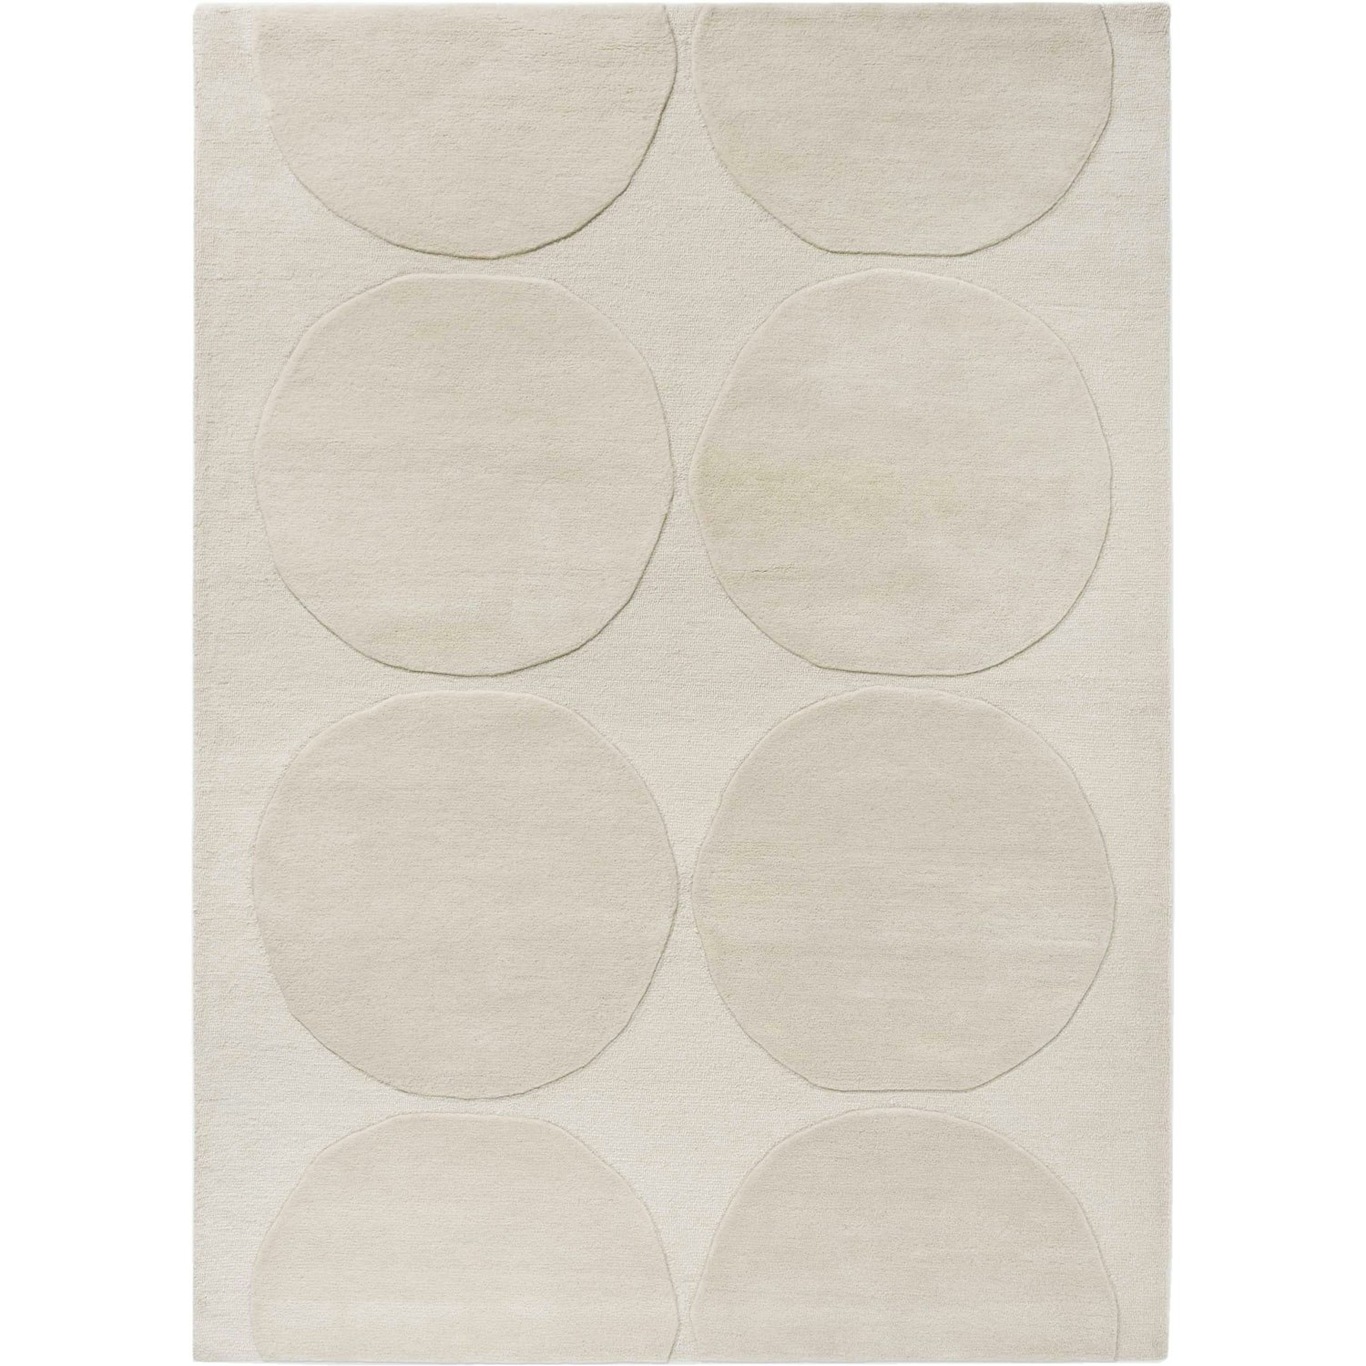 Marimekko Isot Kivet Teppich 200x300 cm, Natural White